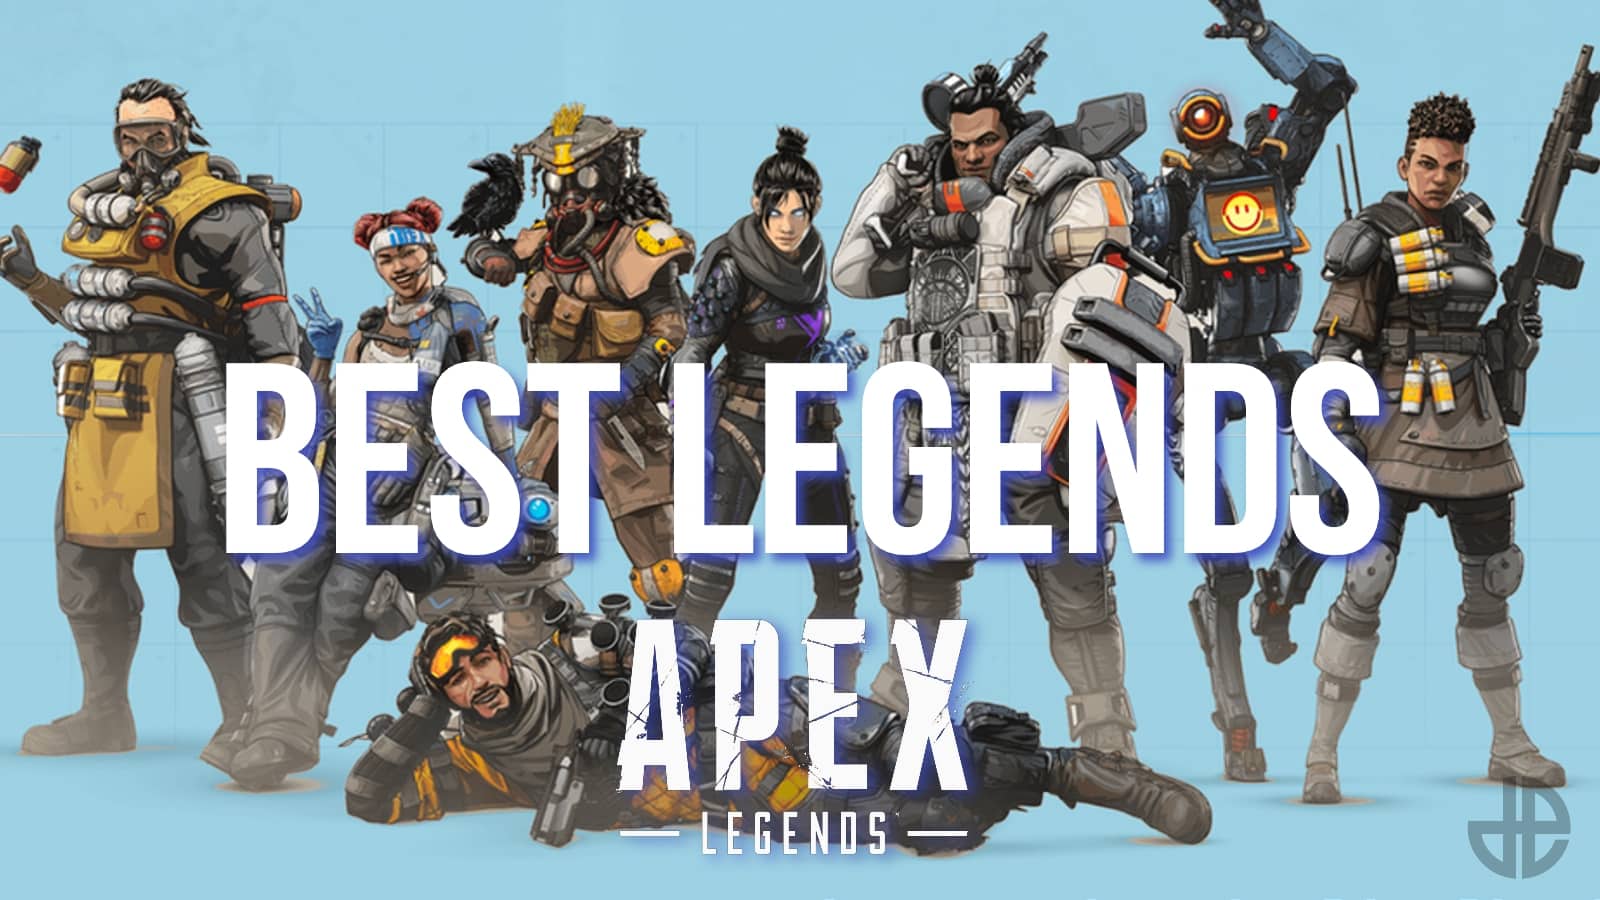 Bedste legender at bruge i Apex Legends